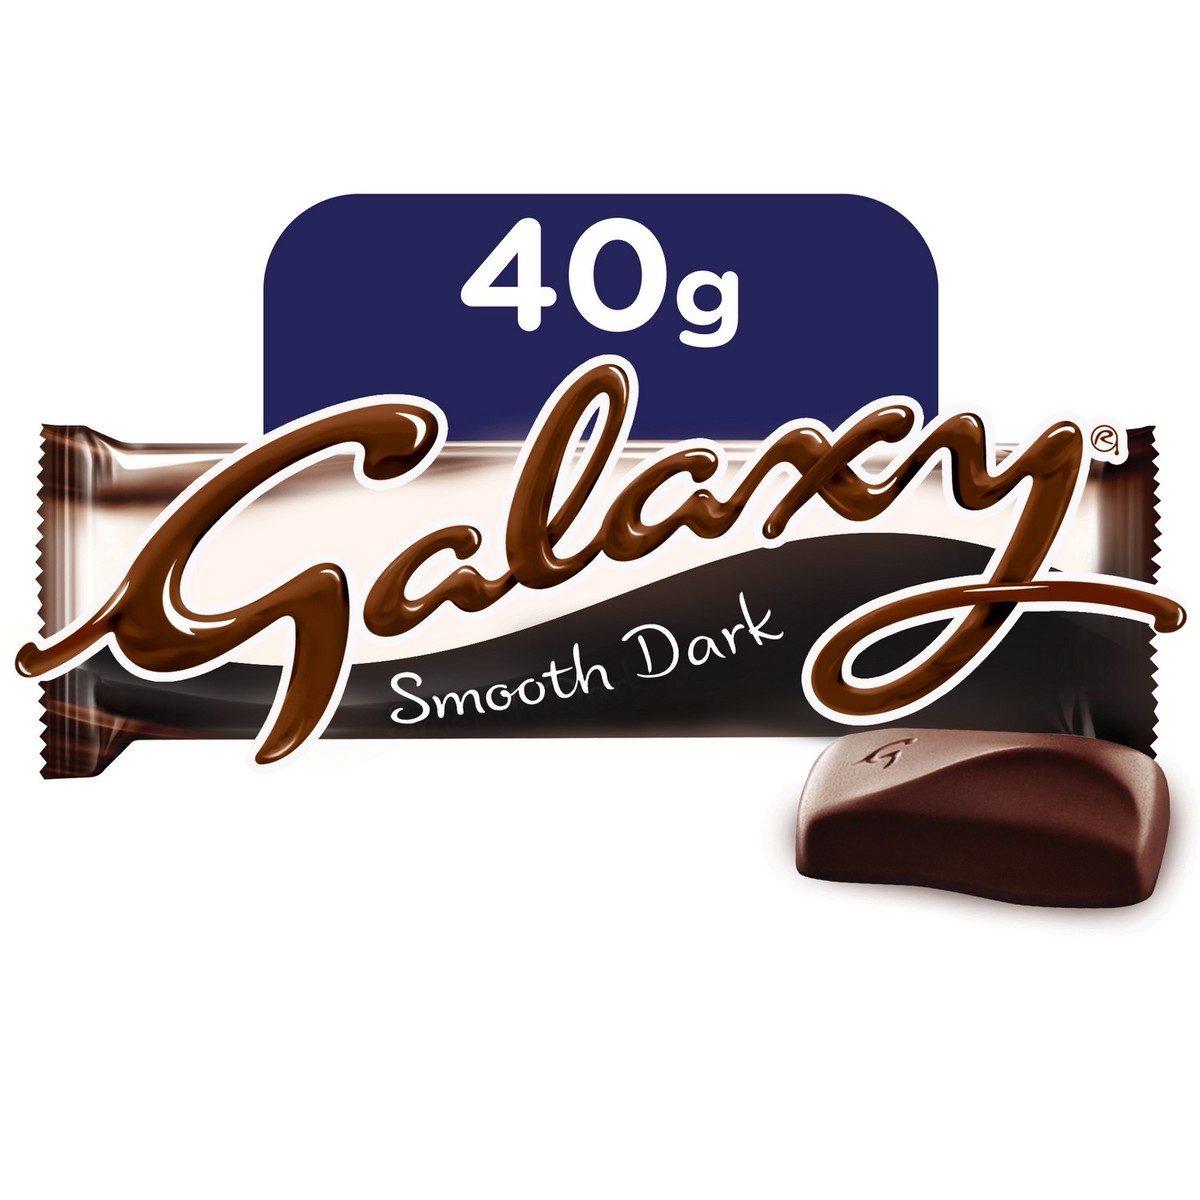 Galaxy Caramel 40gm